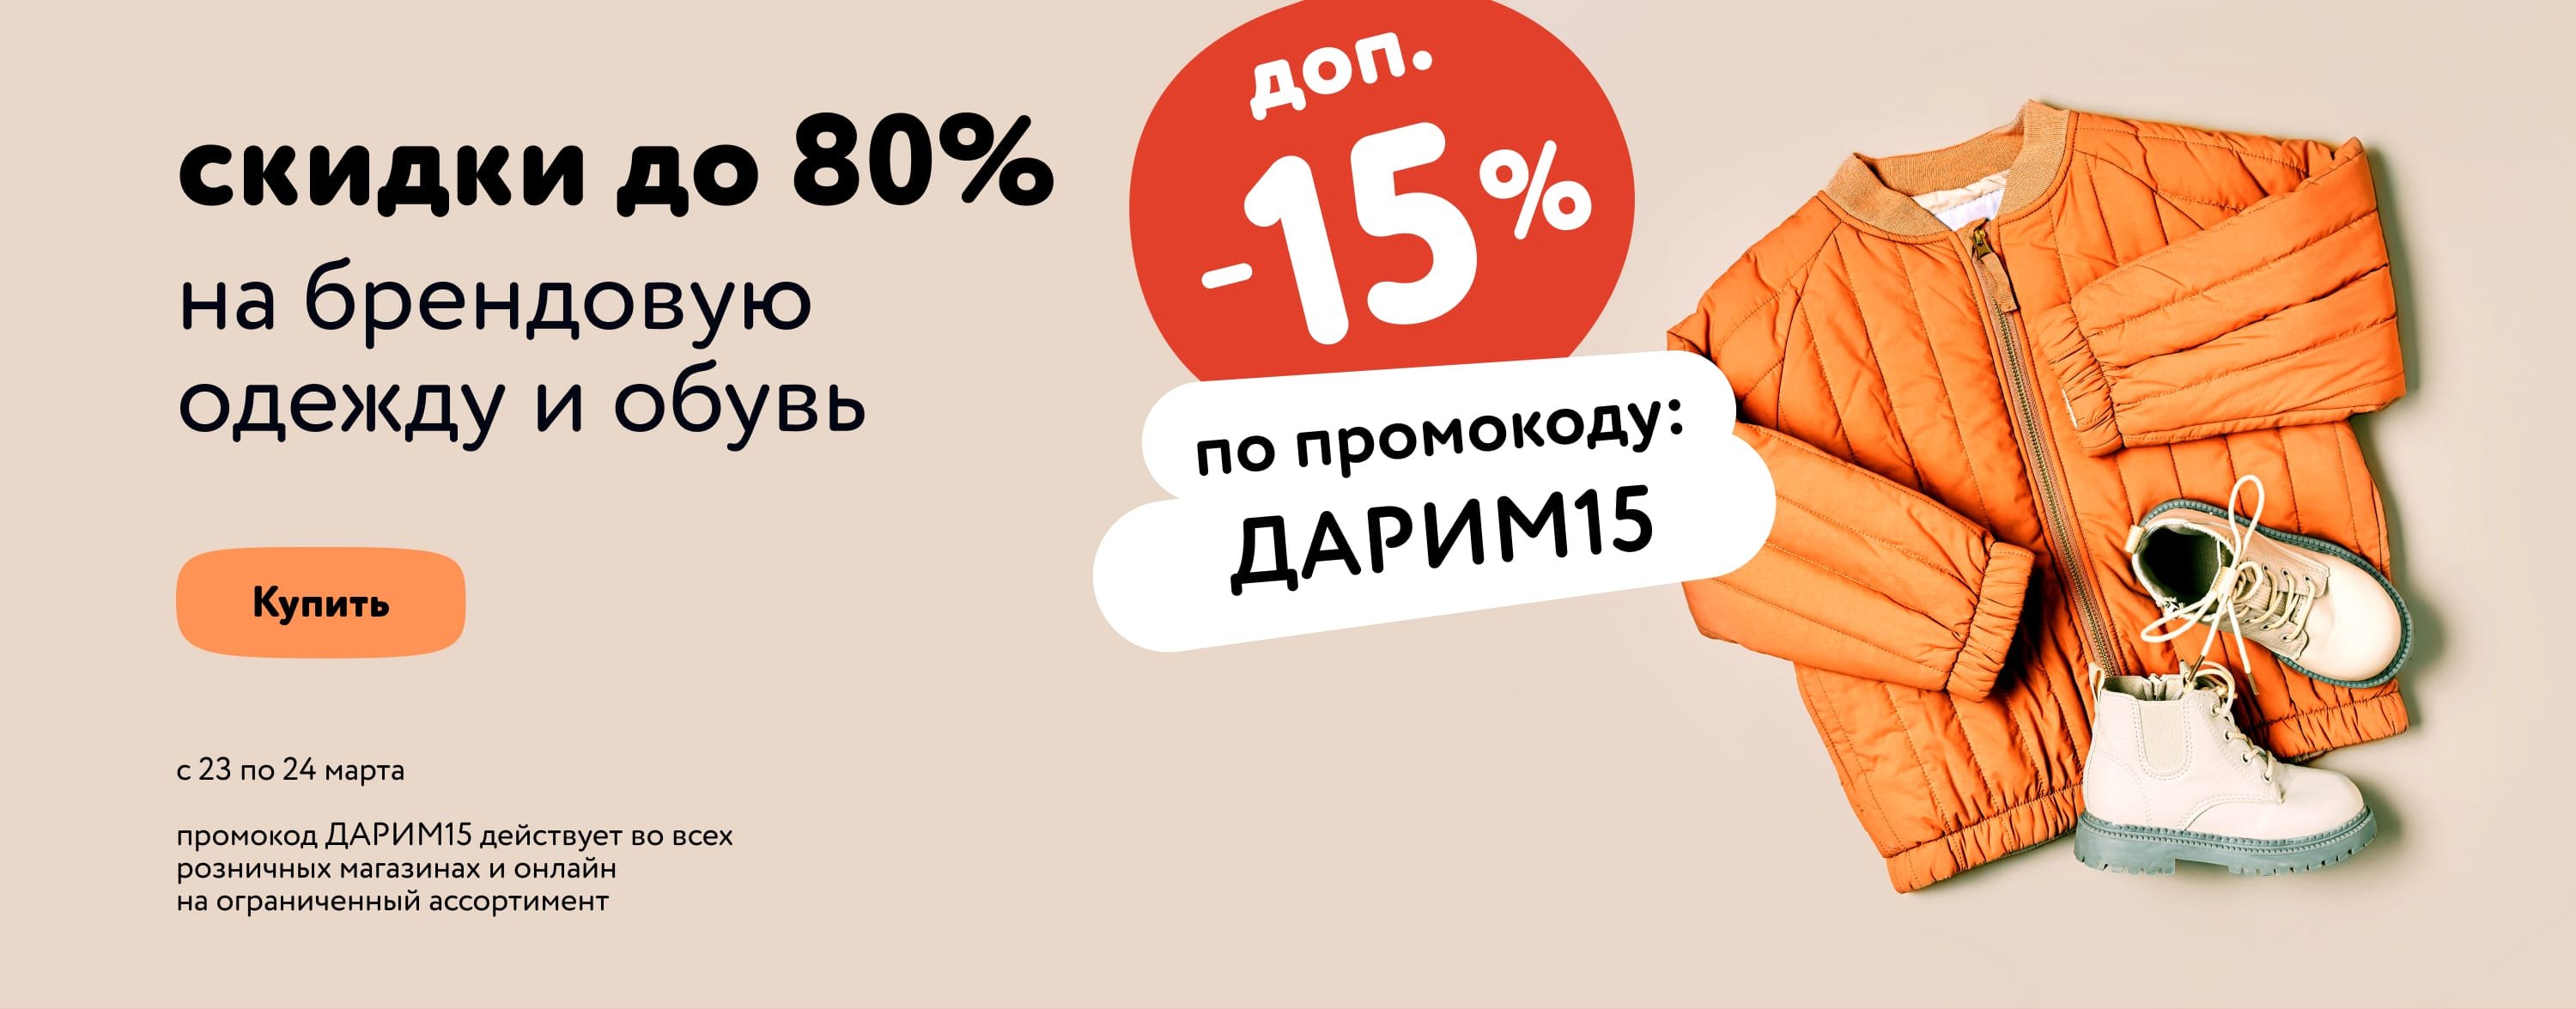 Доп. скидка 15% по промокоду на детскую и женскую одежду и обувь ДАРИМ15 статика